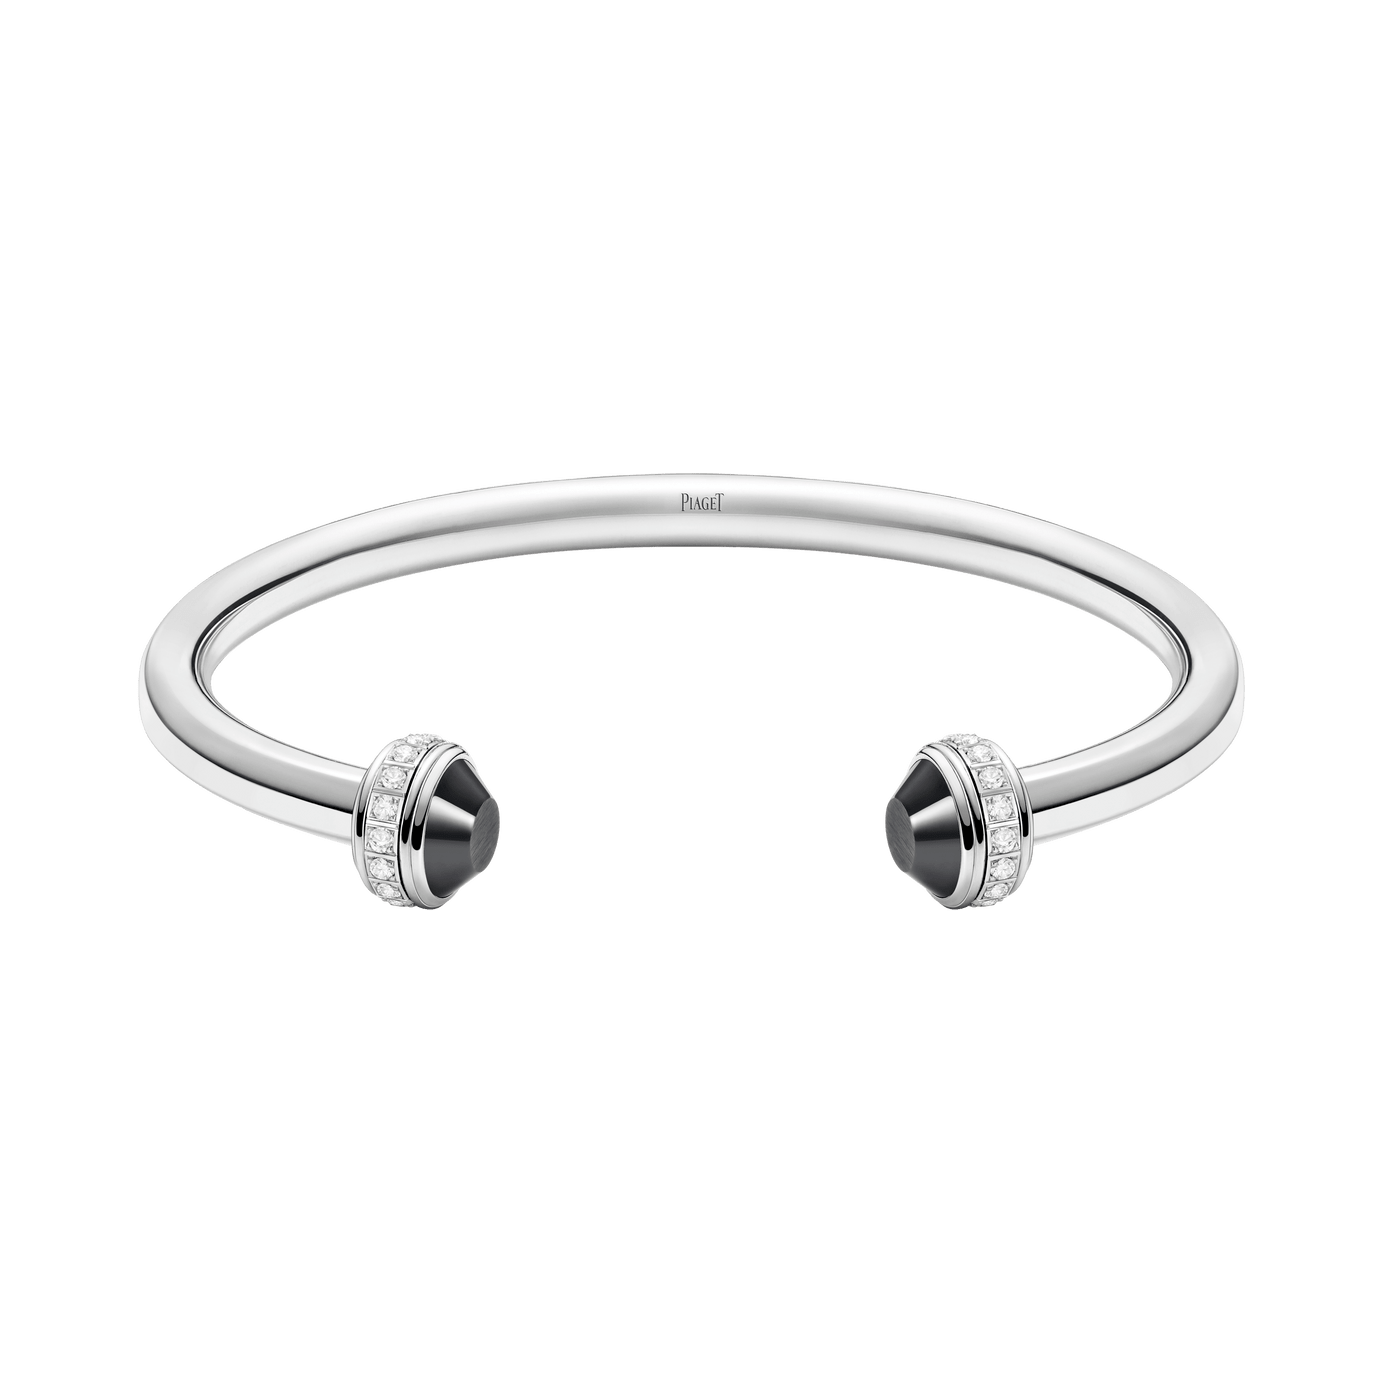 Fancy Shape Tennis Bracelet- The Clear Cut Collection